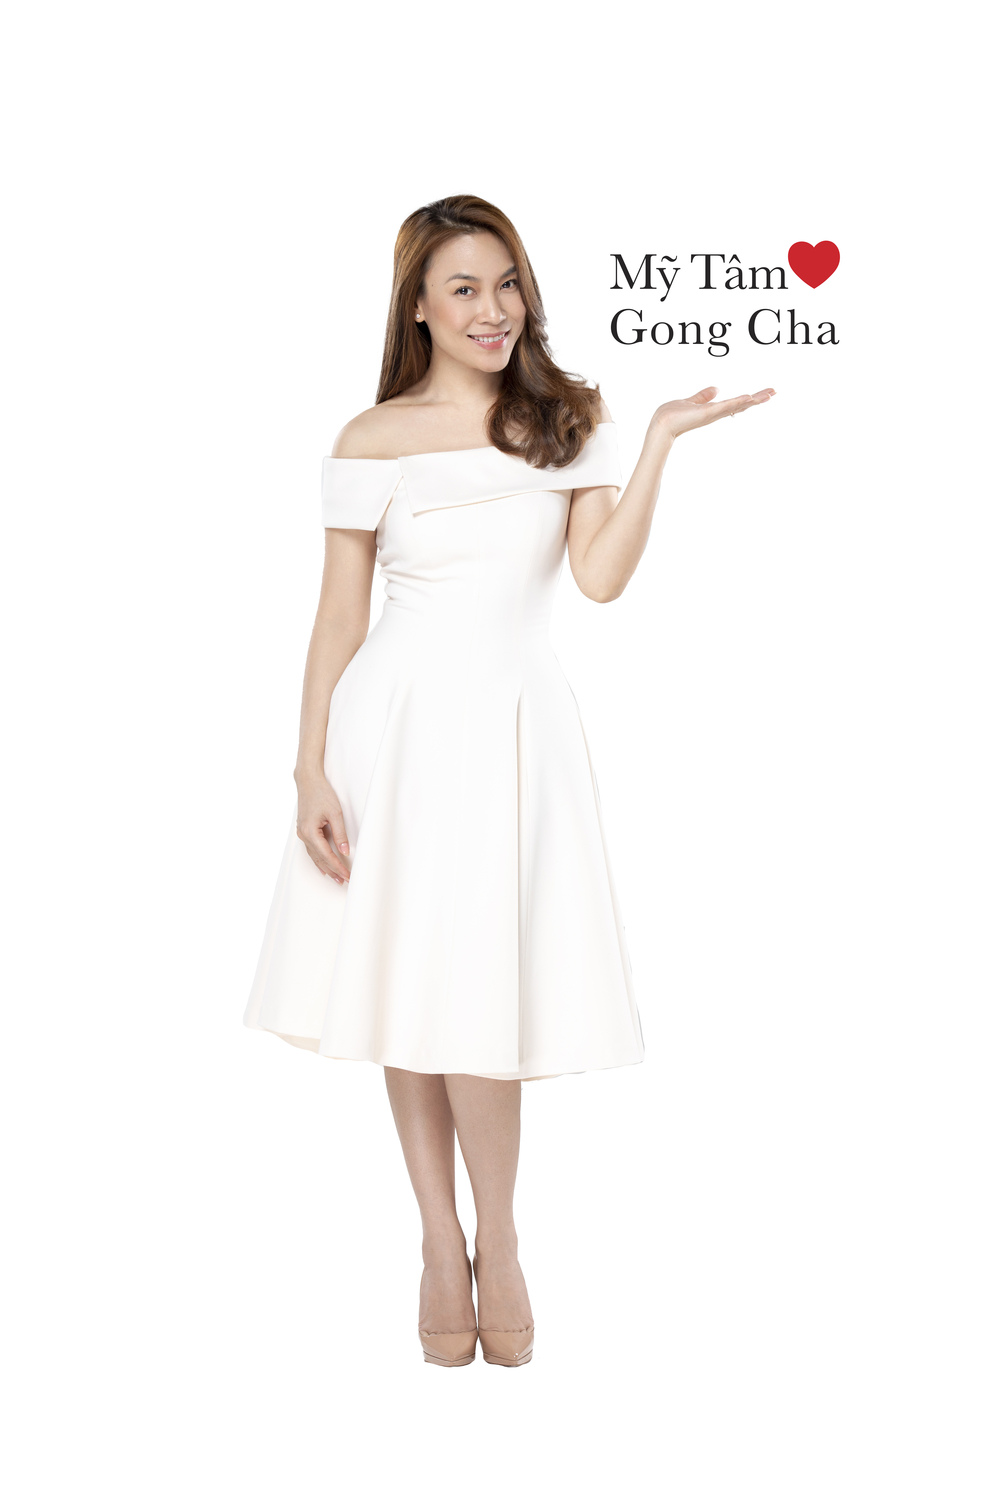 Họa Mi Tóc Nâu Mỹ Tâm trở thành đại sứ thương hiệu gongcha